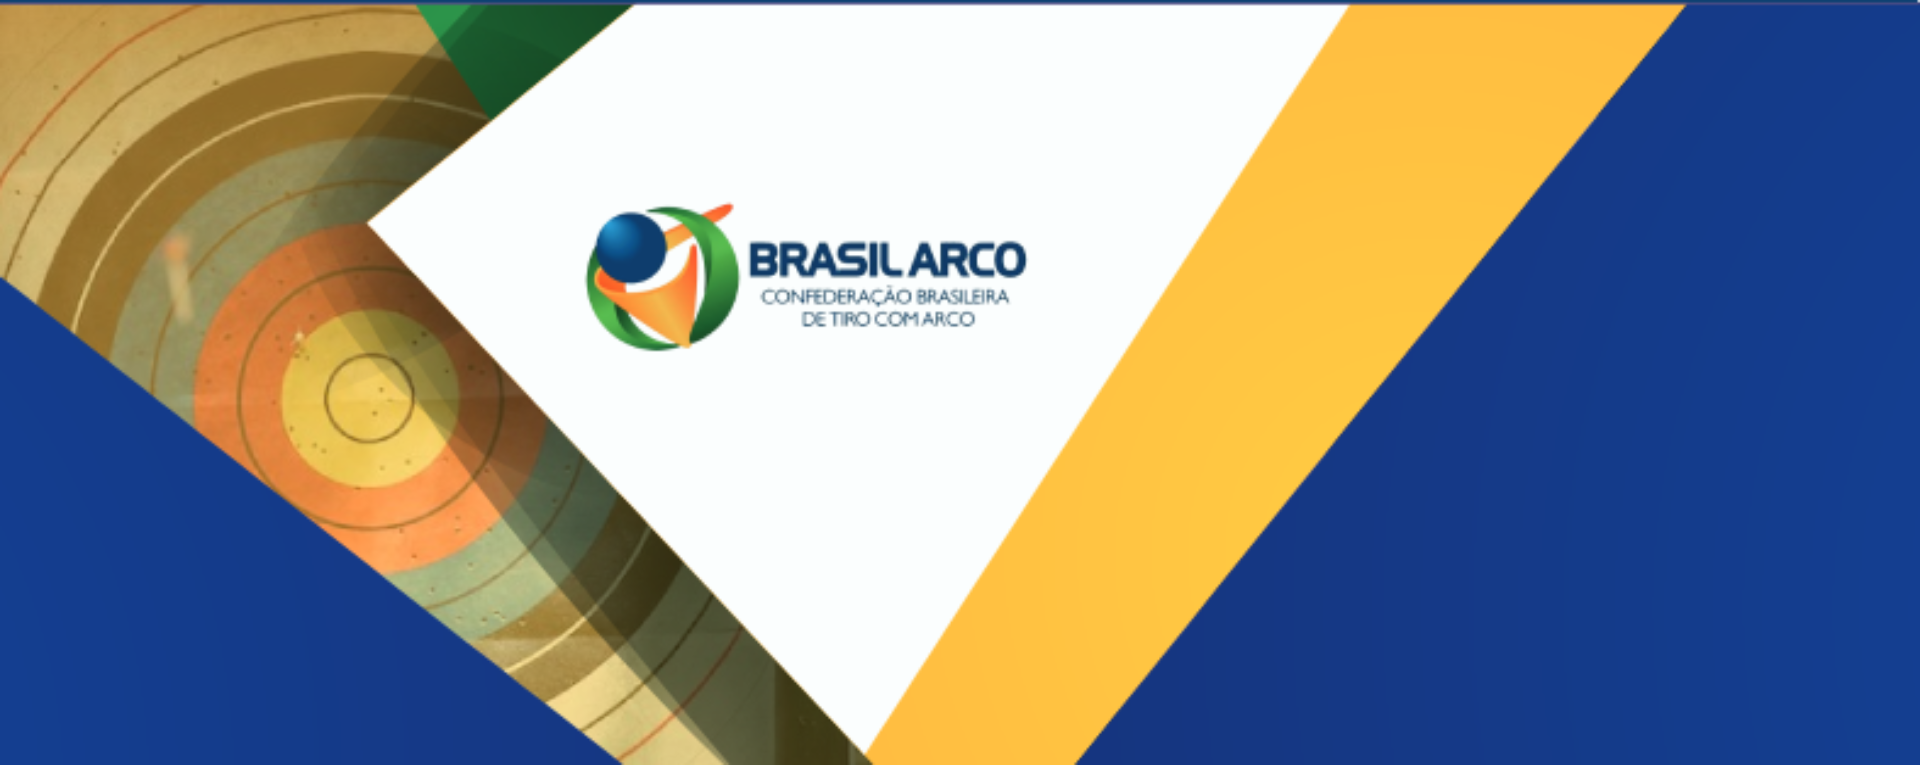 BrasilArco Banner